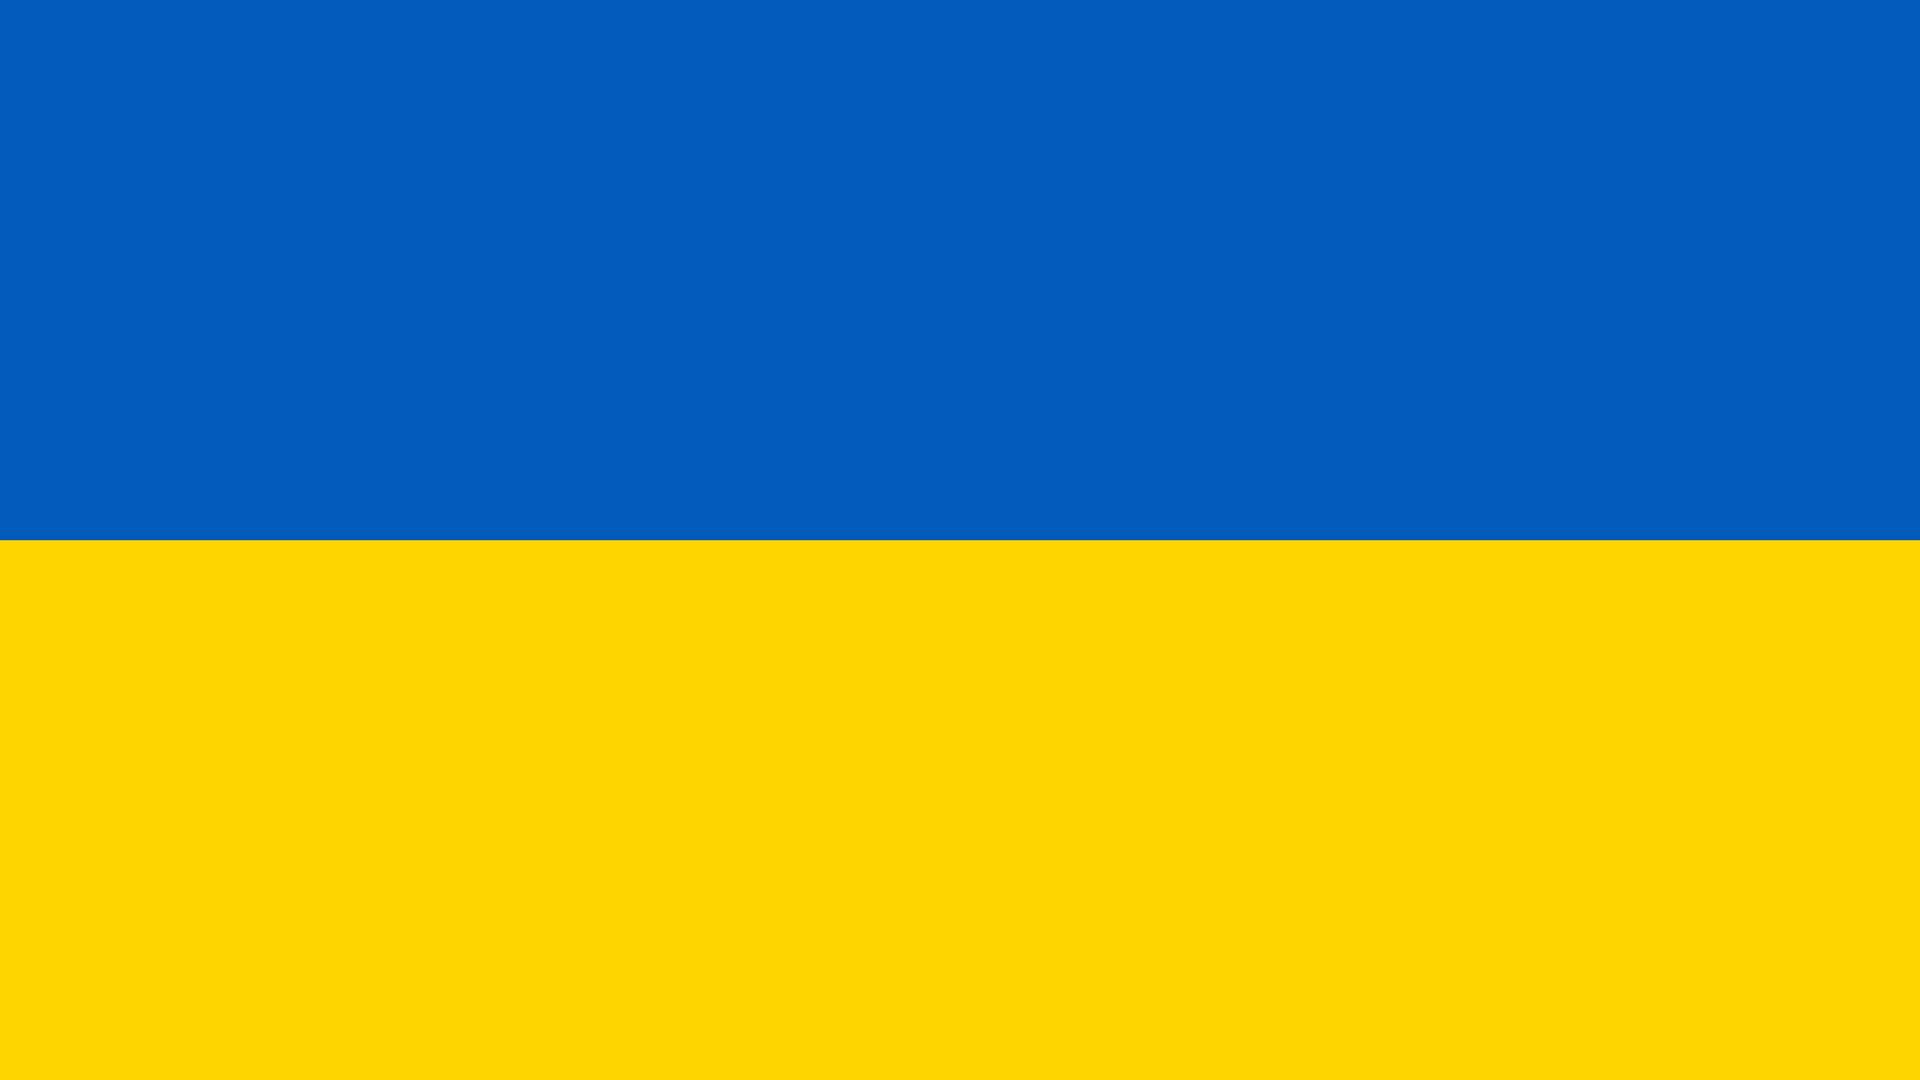 Flag of Ukraine (1).jpg